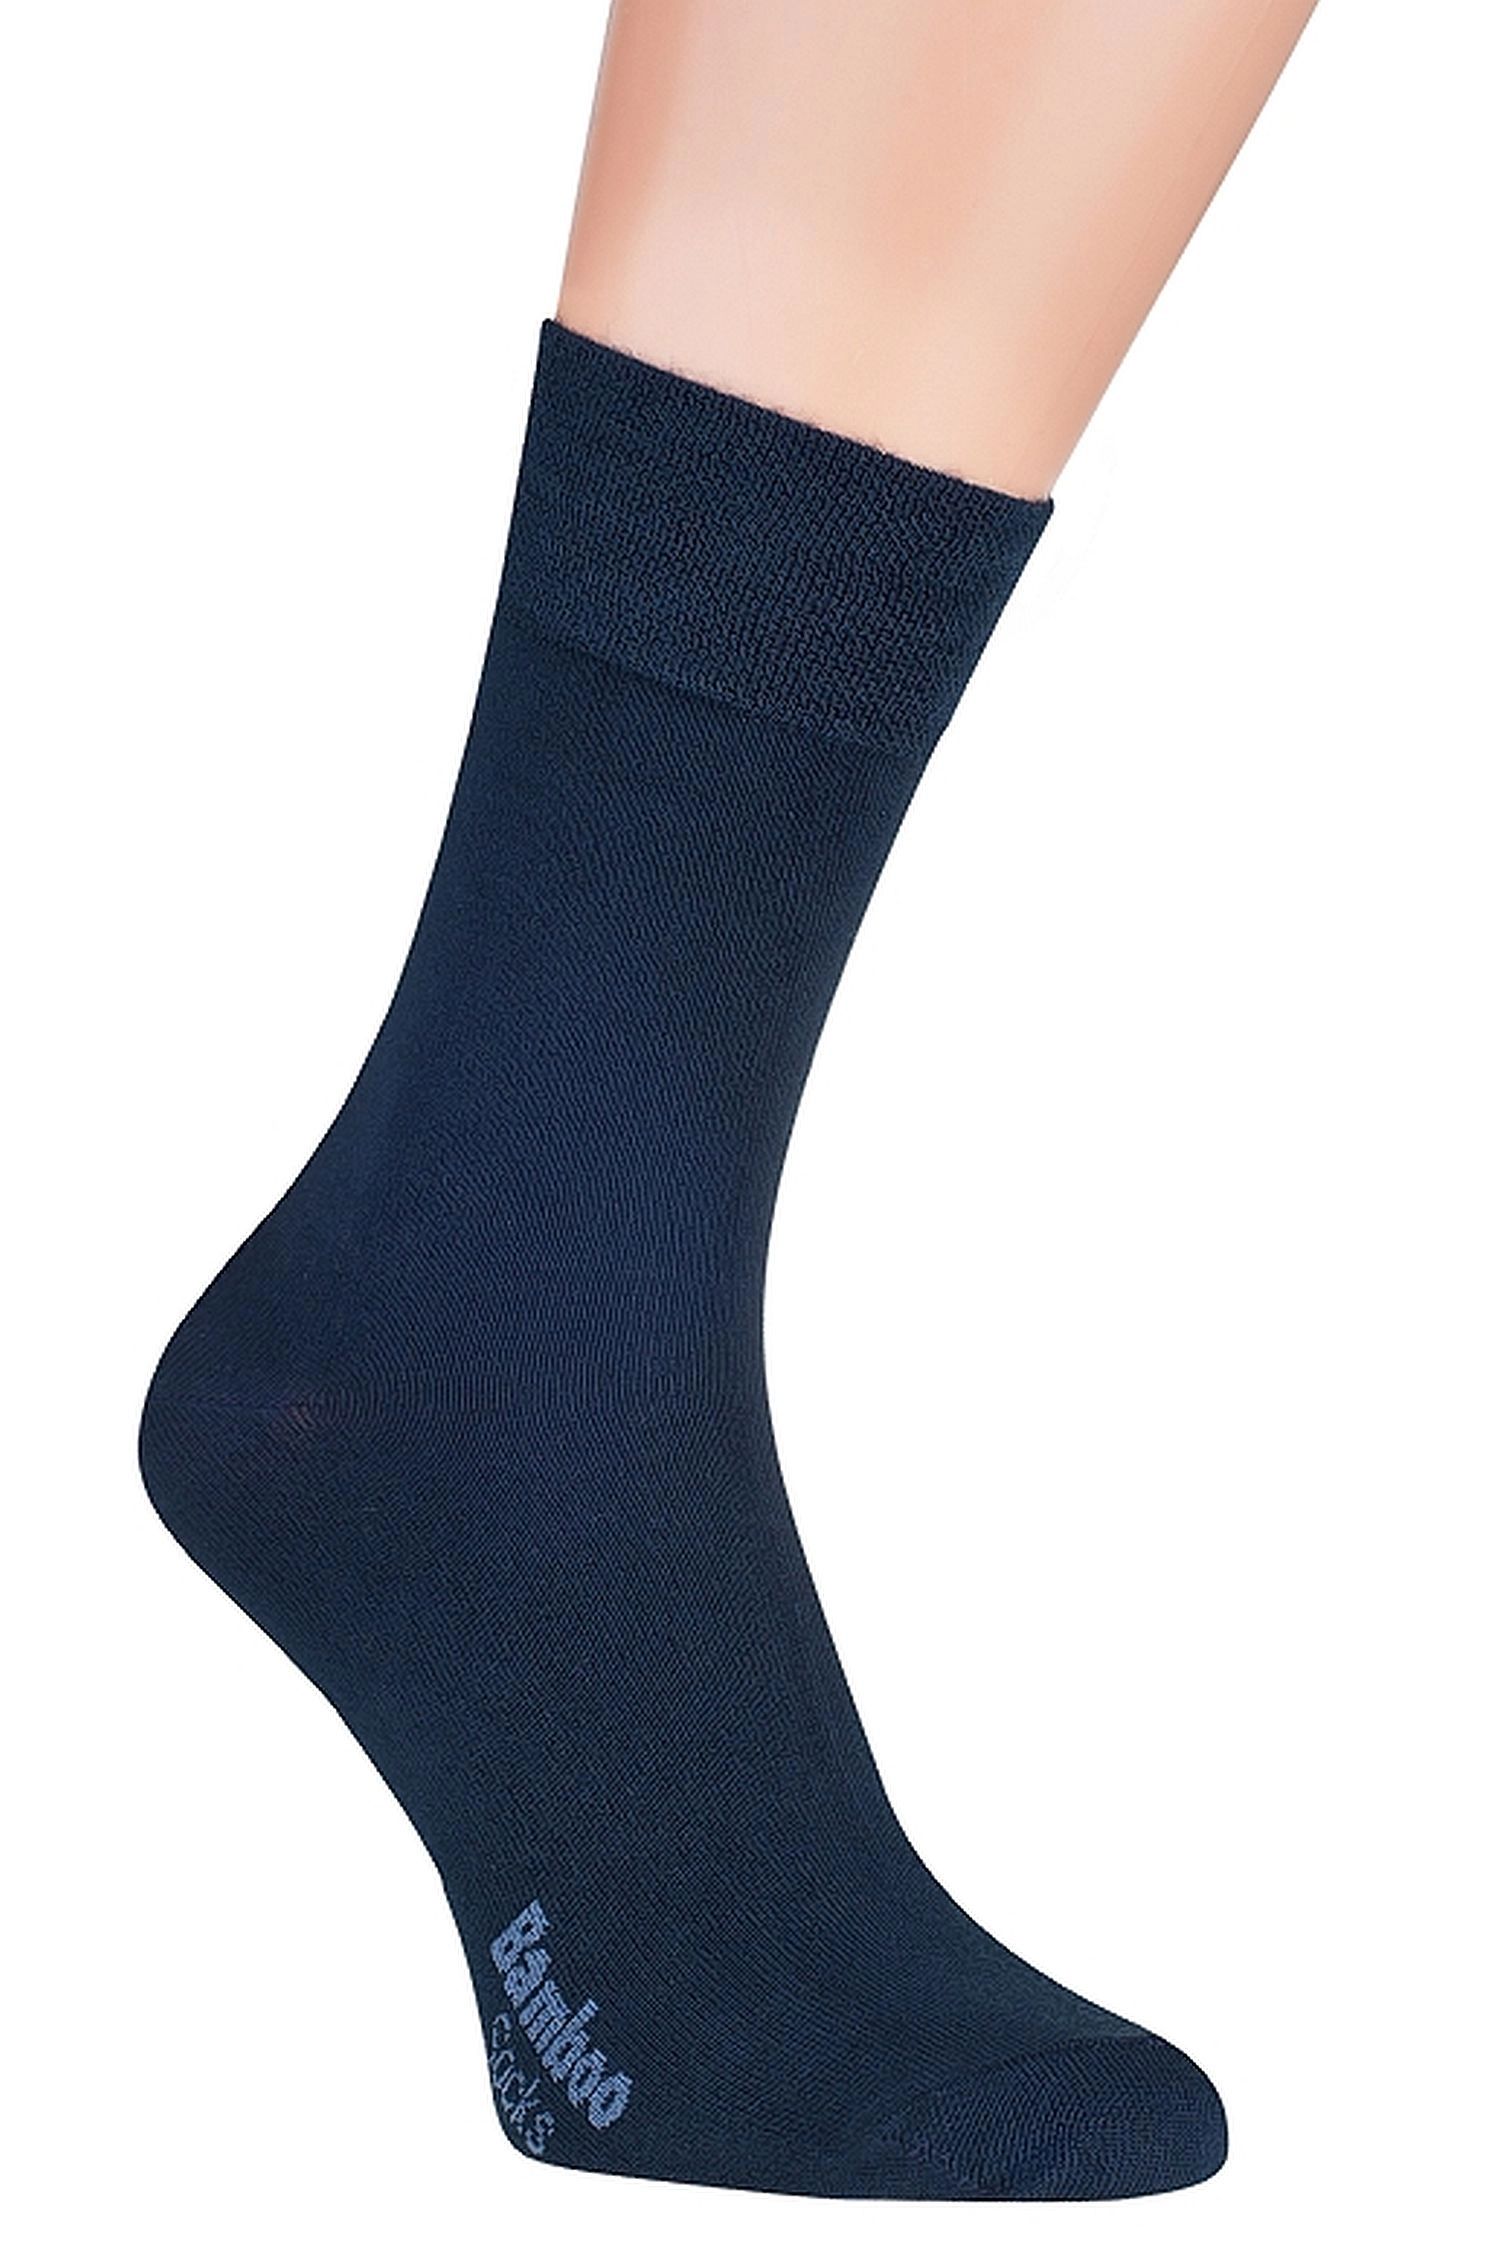 E-shop Pánske ponožky 09 dark blue